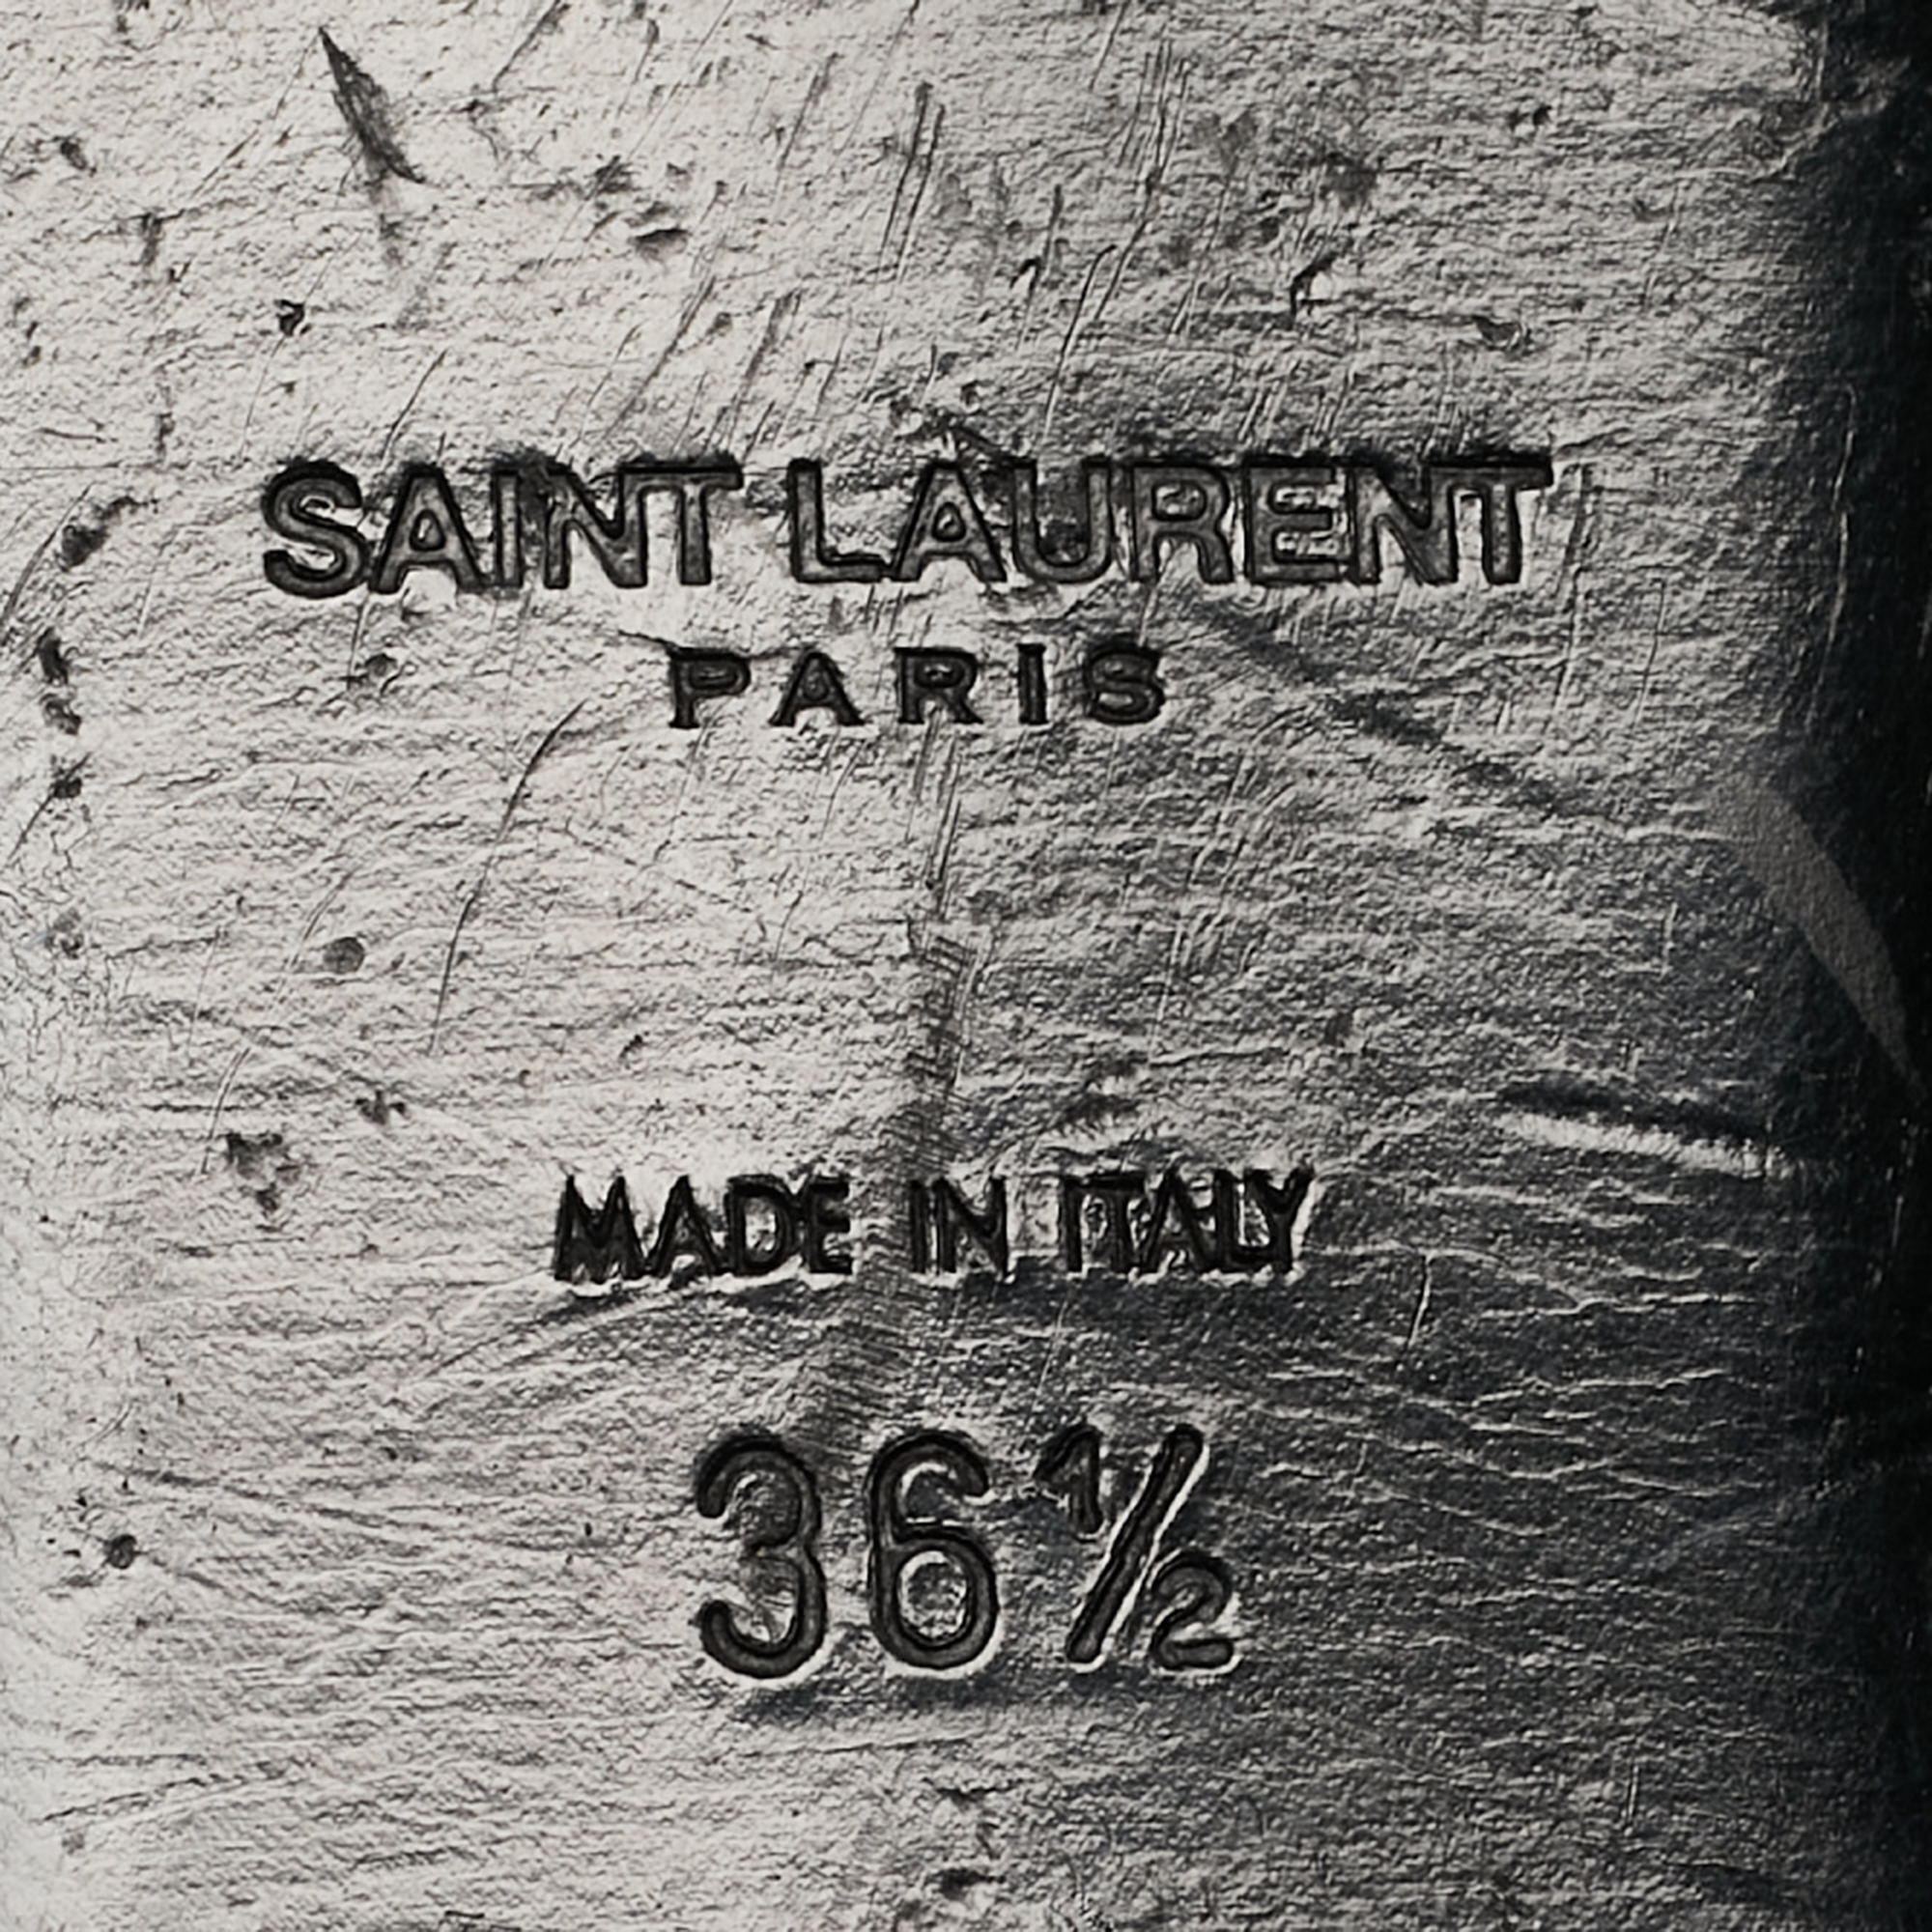 Saint Laurent Black  Suede Ankle Strap Sandals Size 36.5